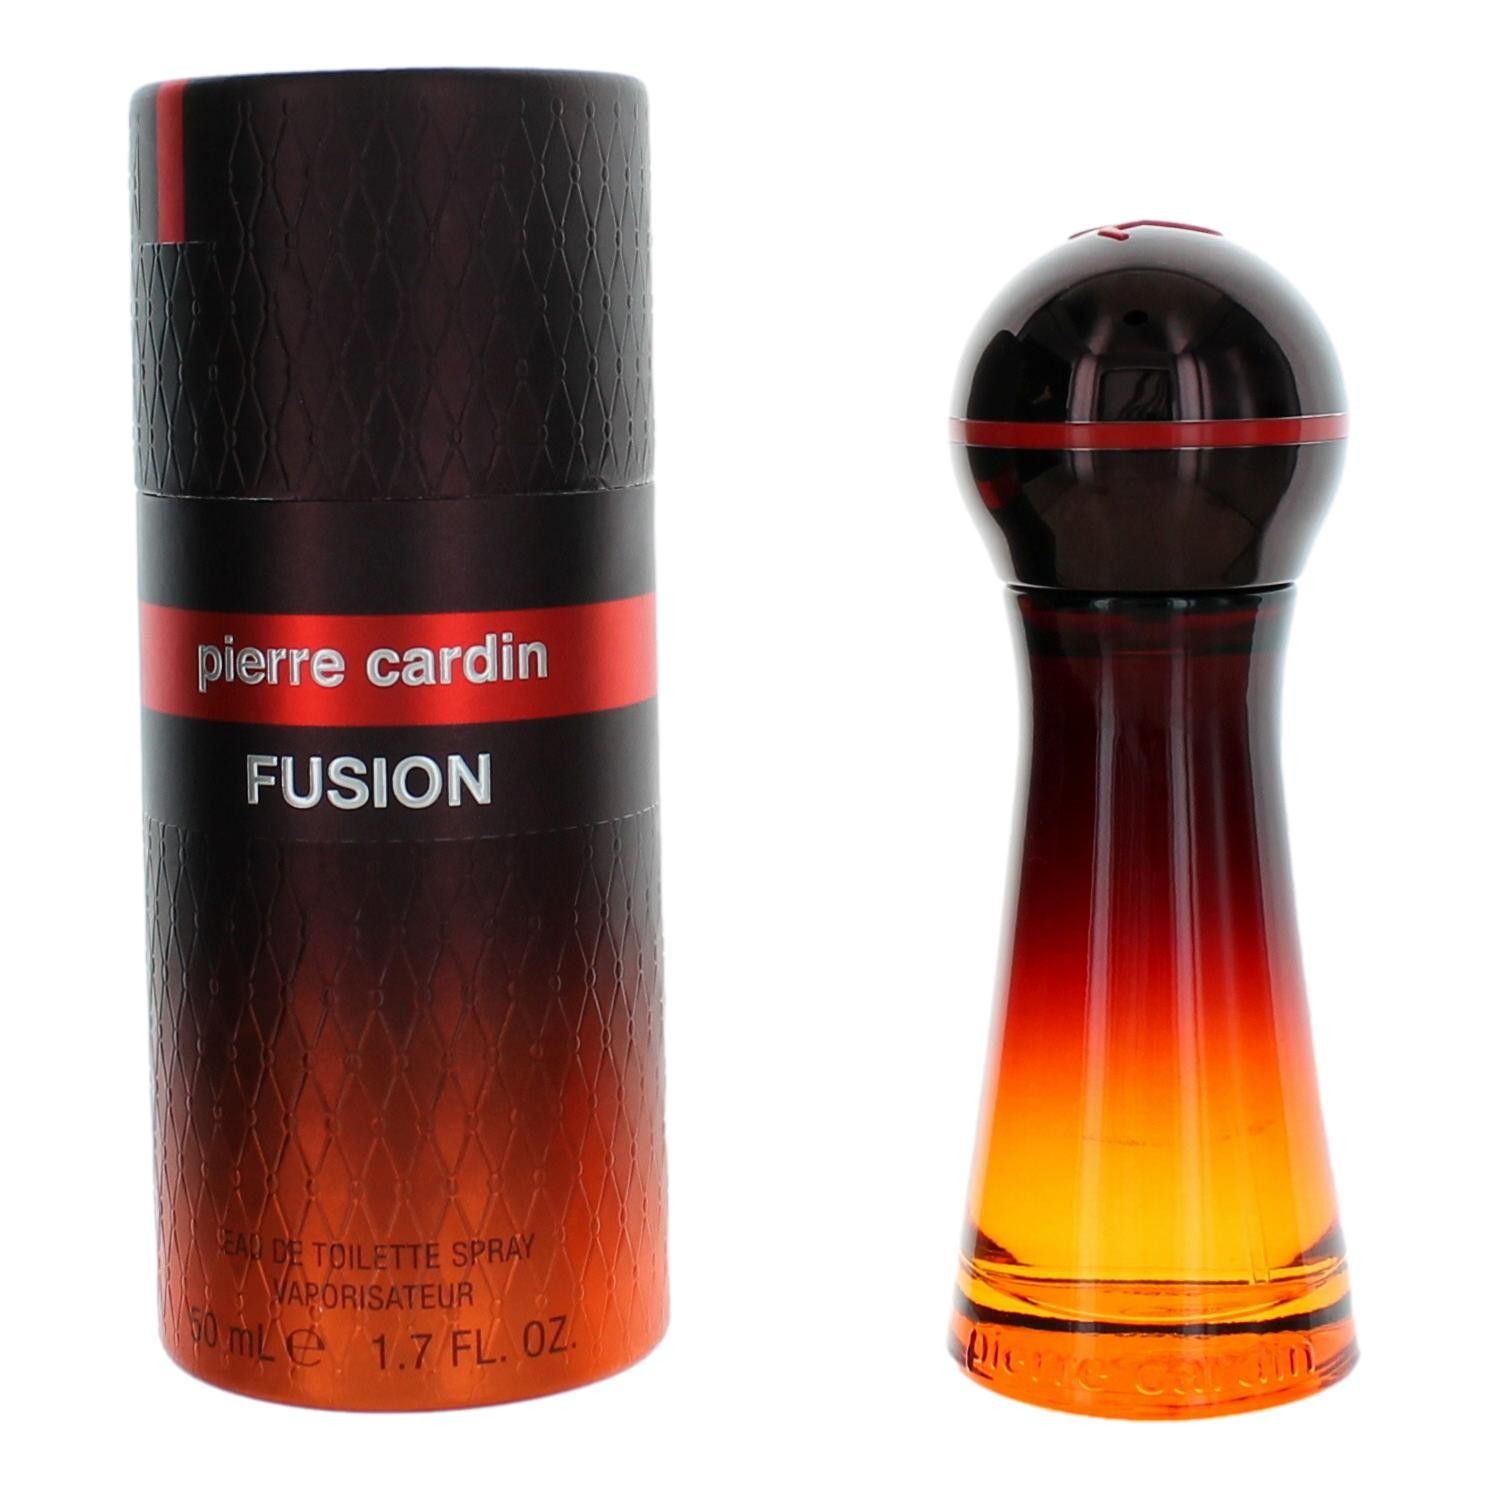 Pierre Cardin Fusion by Pierre Cardin 1.7 oz Eau De Toilette Spray for Men